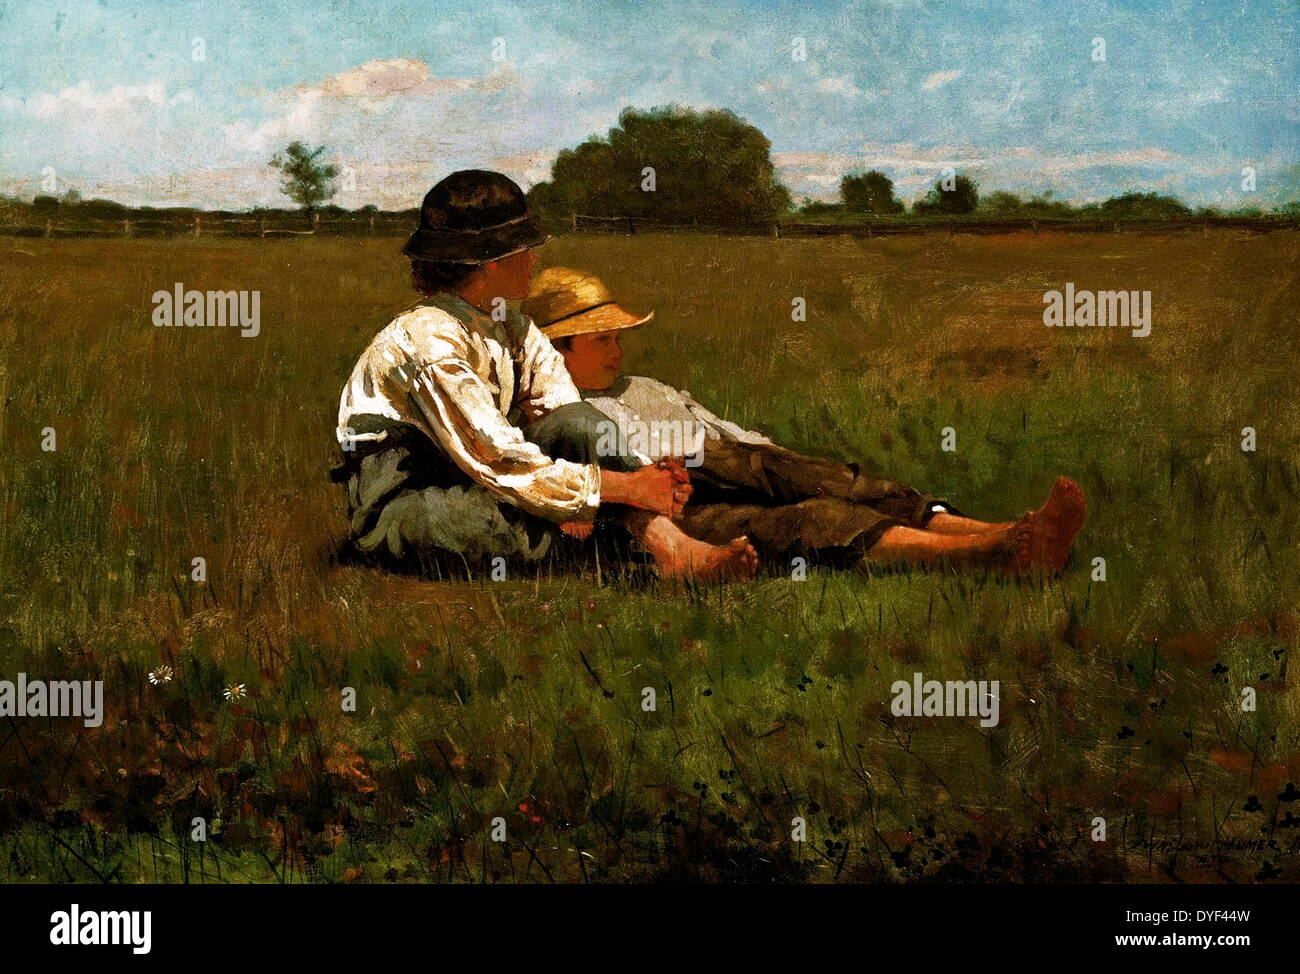 Les garçons dans un pâturage par Winslow Homer. Huile sur toile, fin xixe siècle, début du xxe siècle. L'artiste américain qui a vécu entre 1836-1910. Banque D'Images